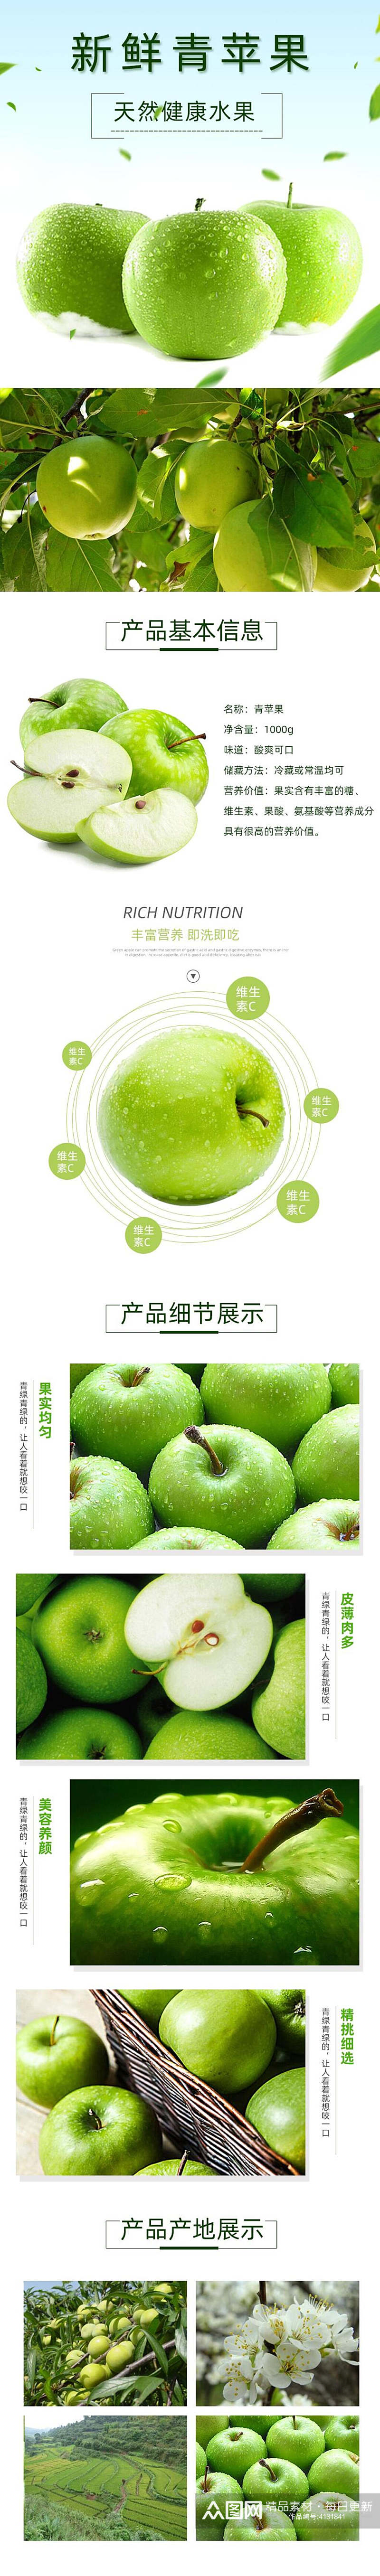 新鲜青苹果水果详情页素材